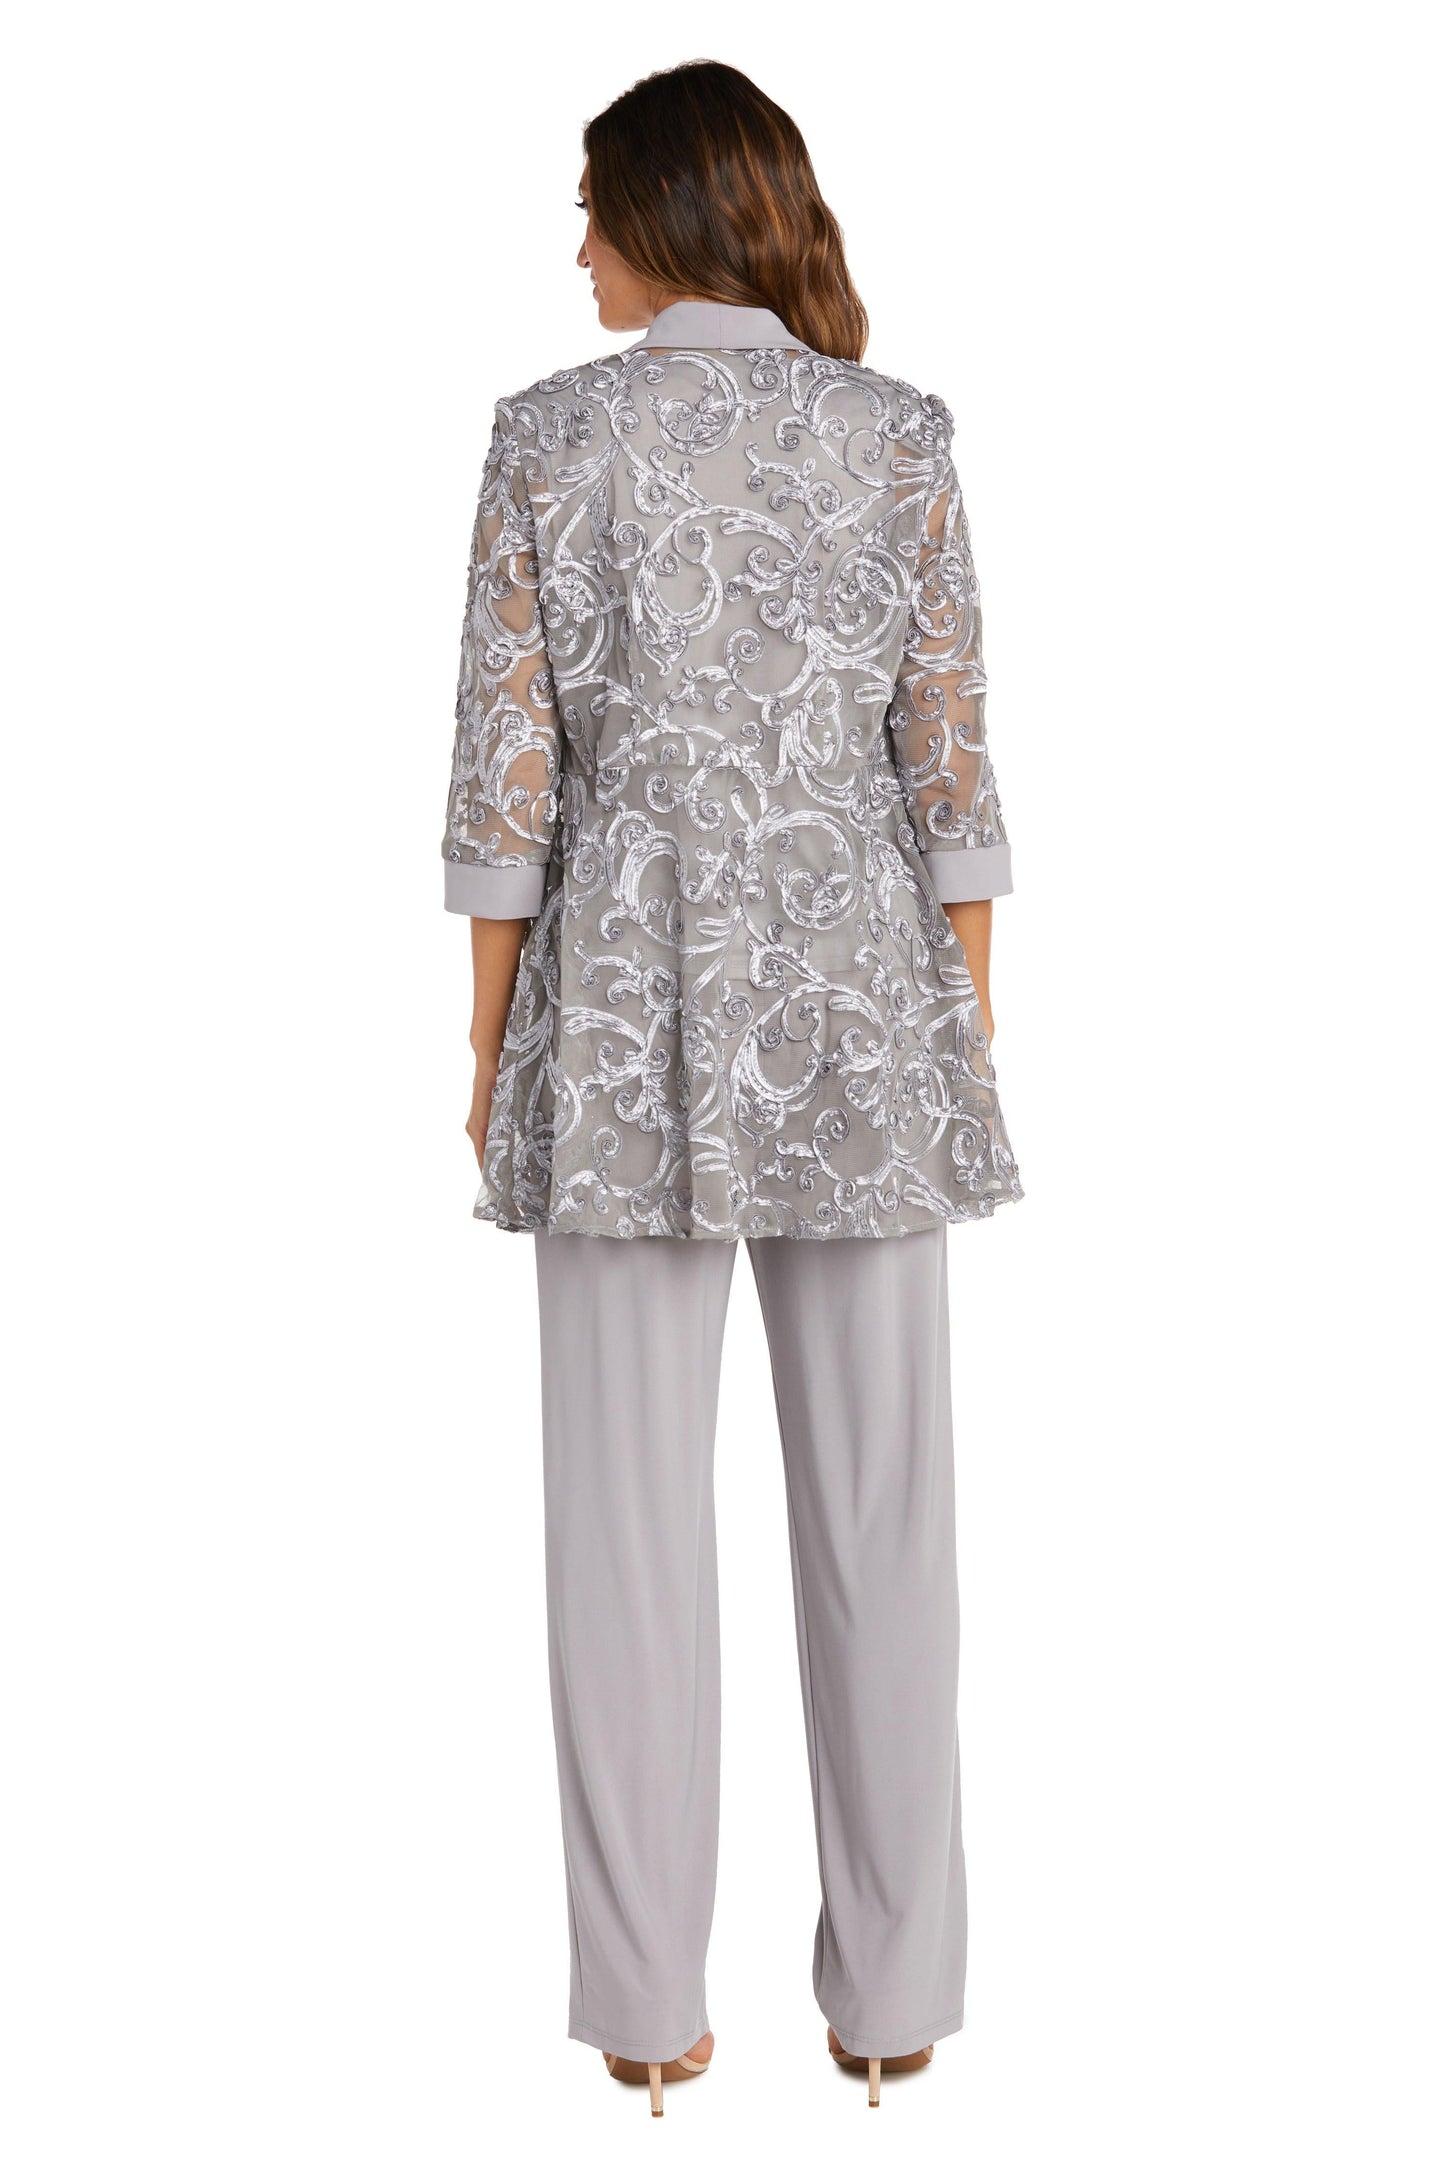 R&M Richards Formal Jacket Petite Pant Suit 5012P - The Dress Outlet